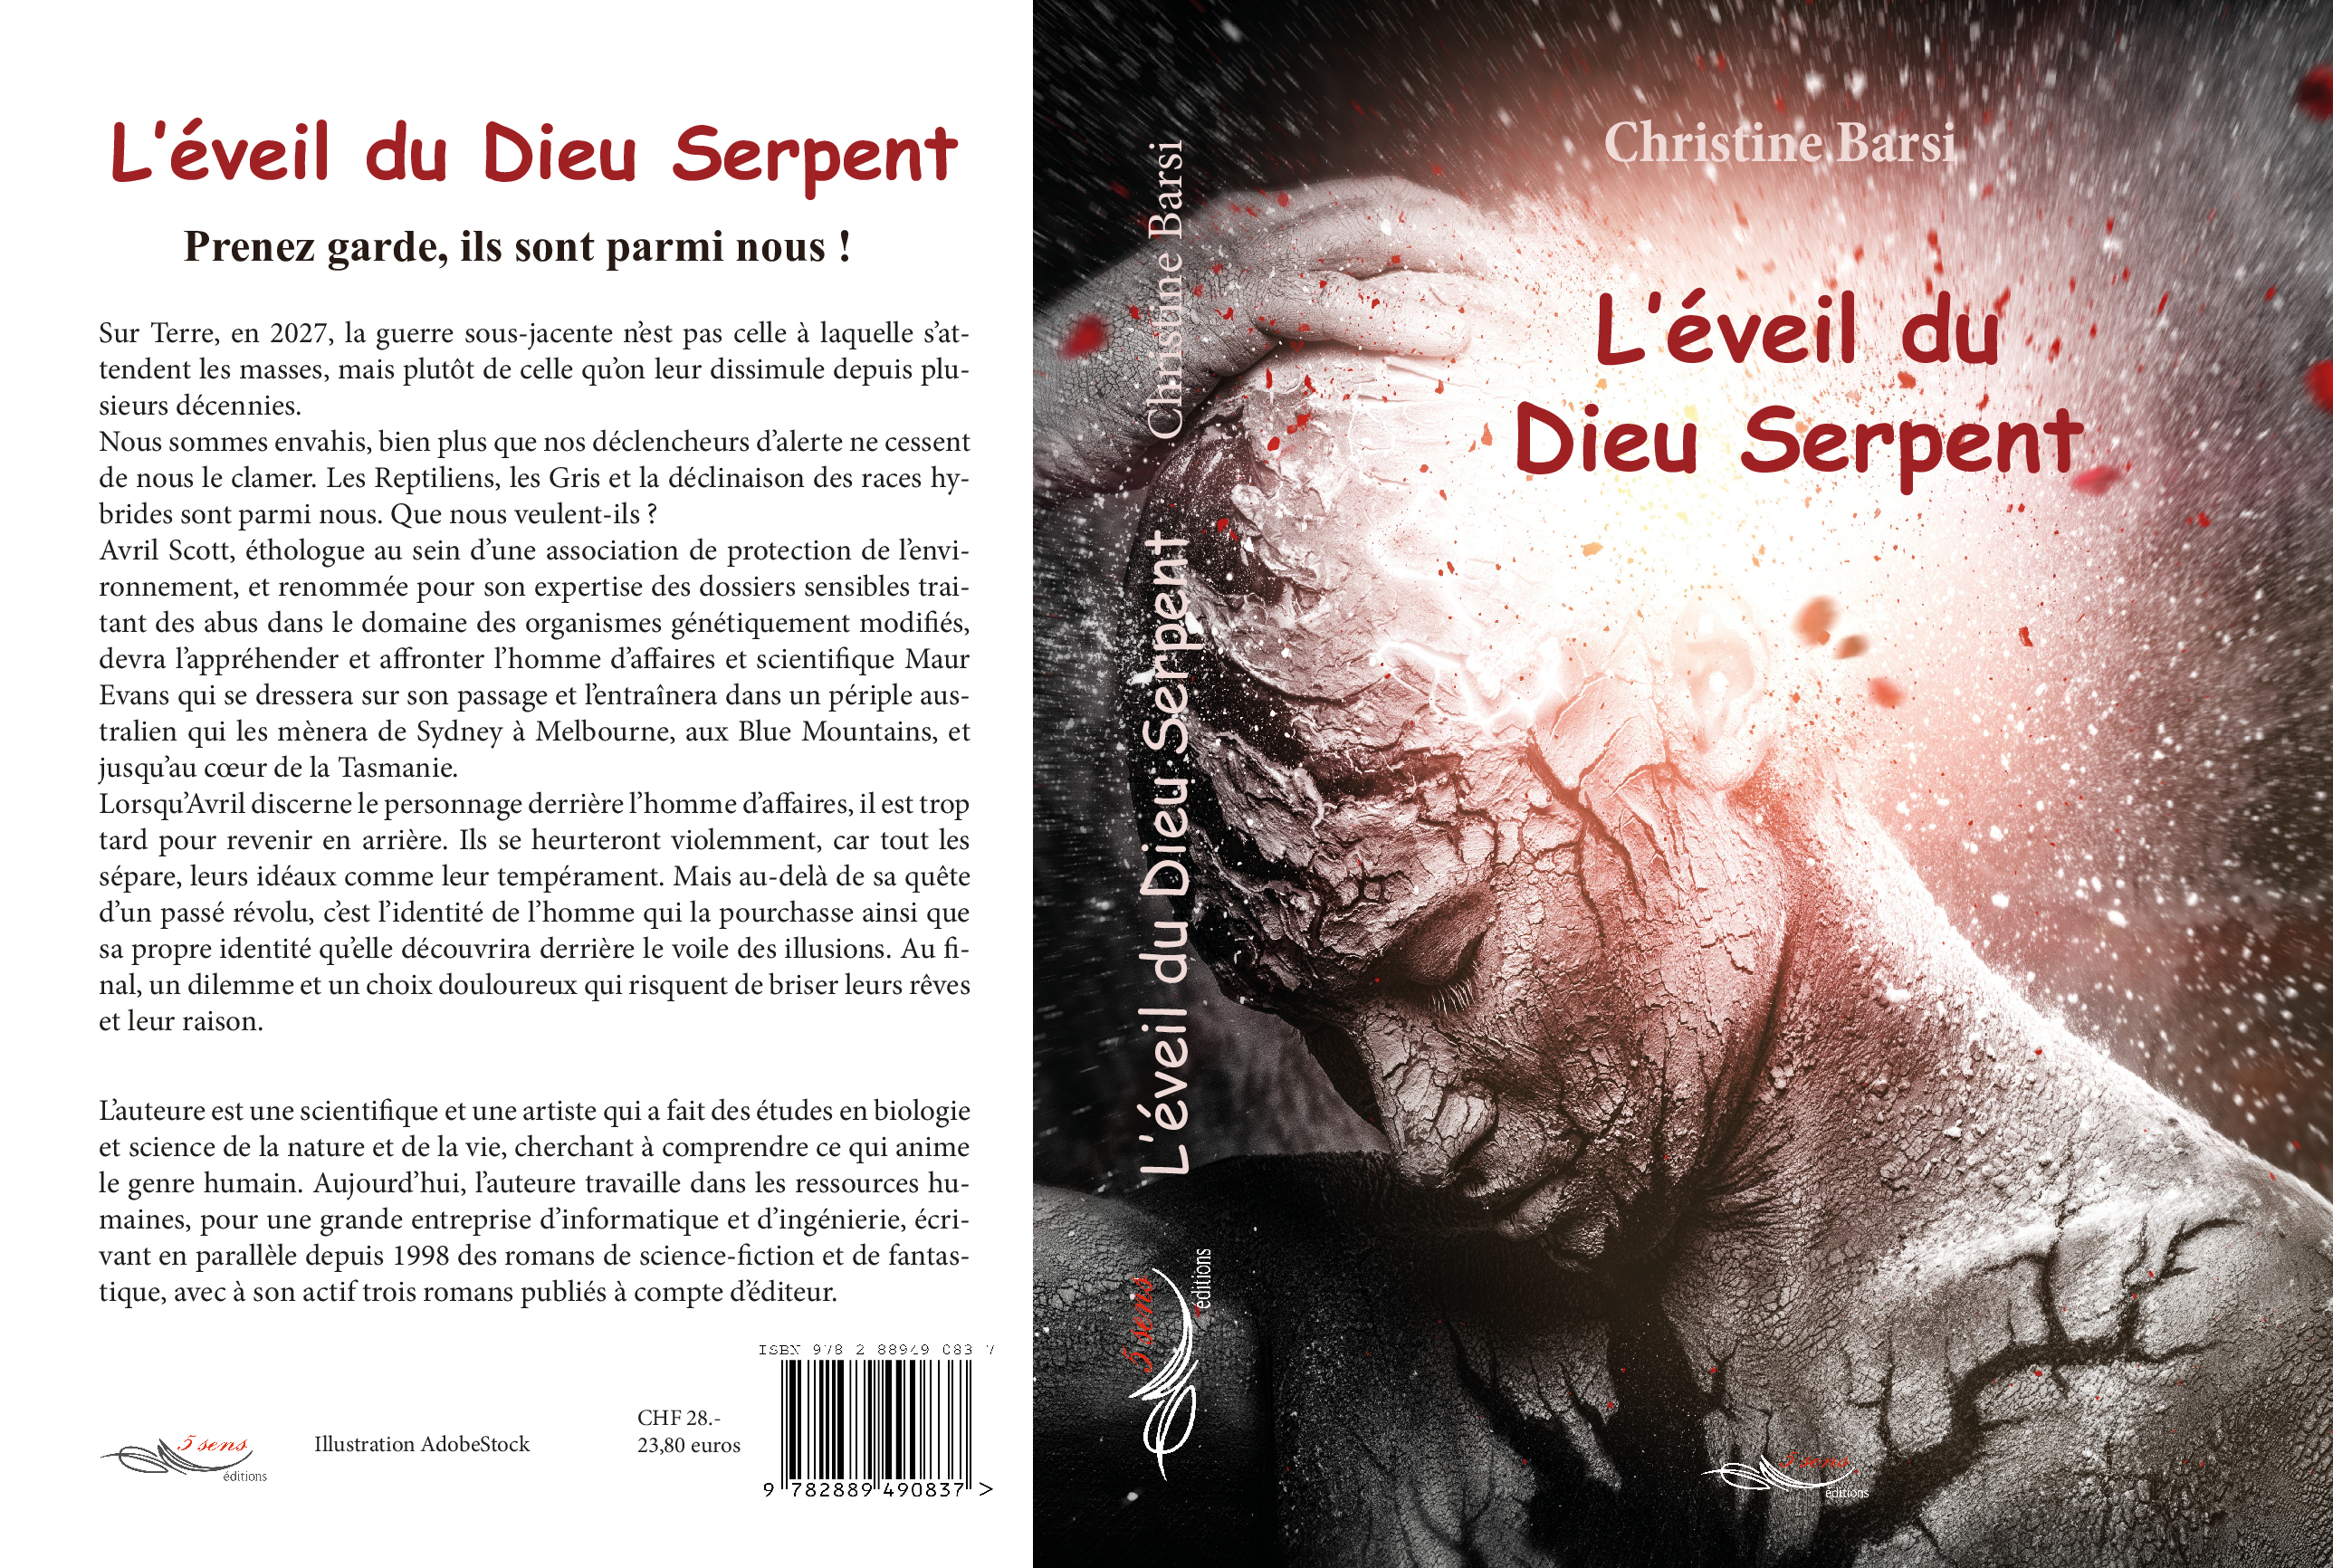 Roman de science-fiction et d'anticipation L'éveil du Dieu Serpent, par l'auteure Christine Barsi